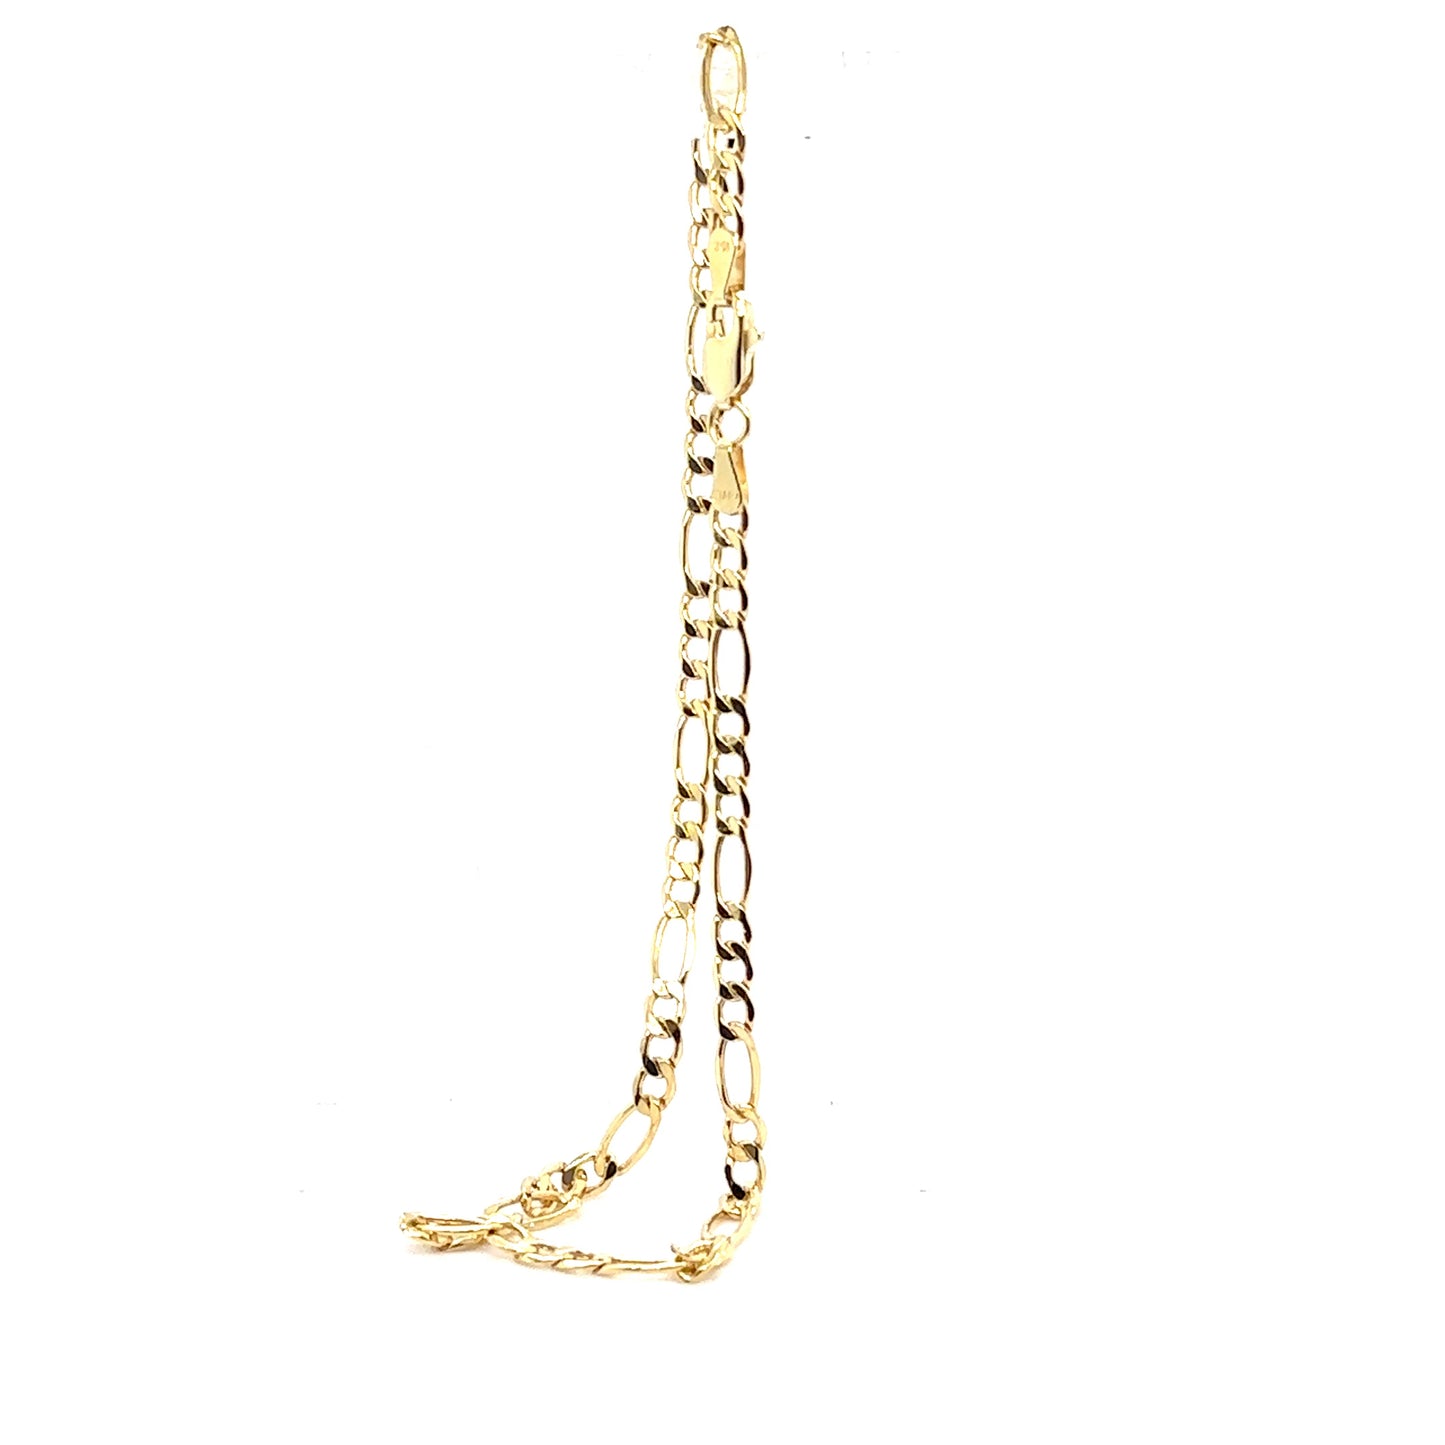 10k Gold Figaro Link Anklet Bracelet